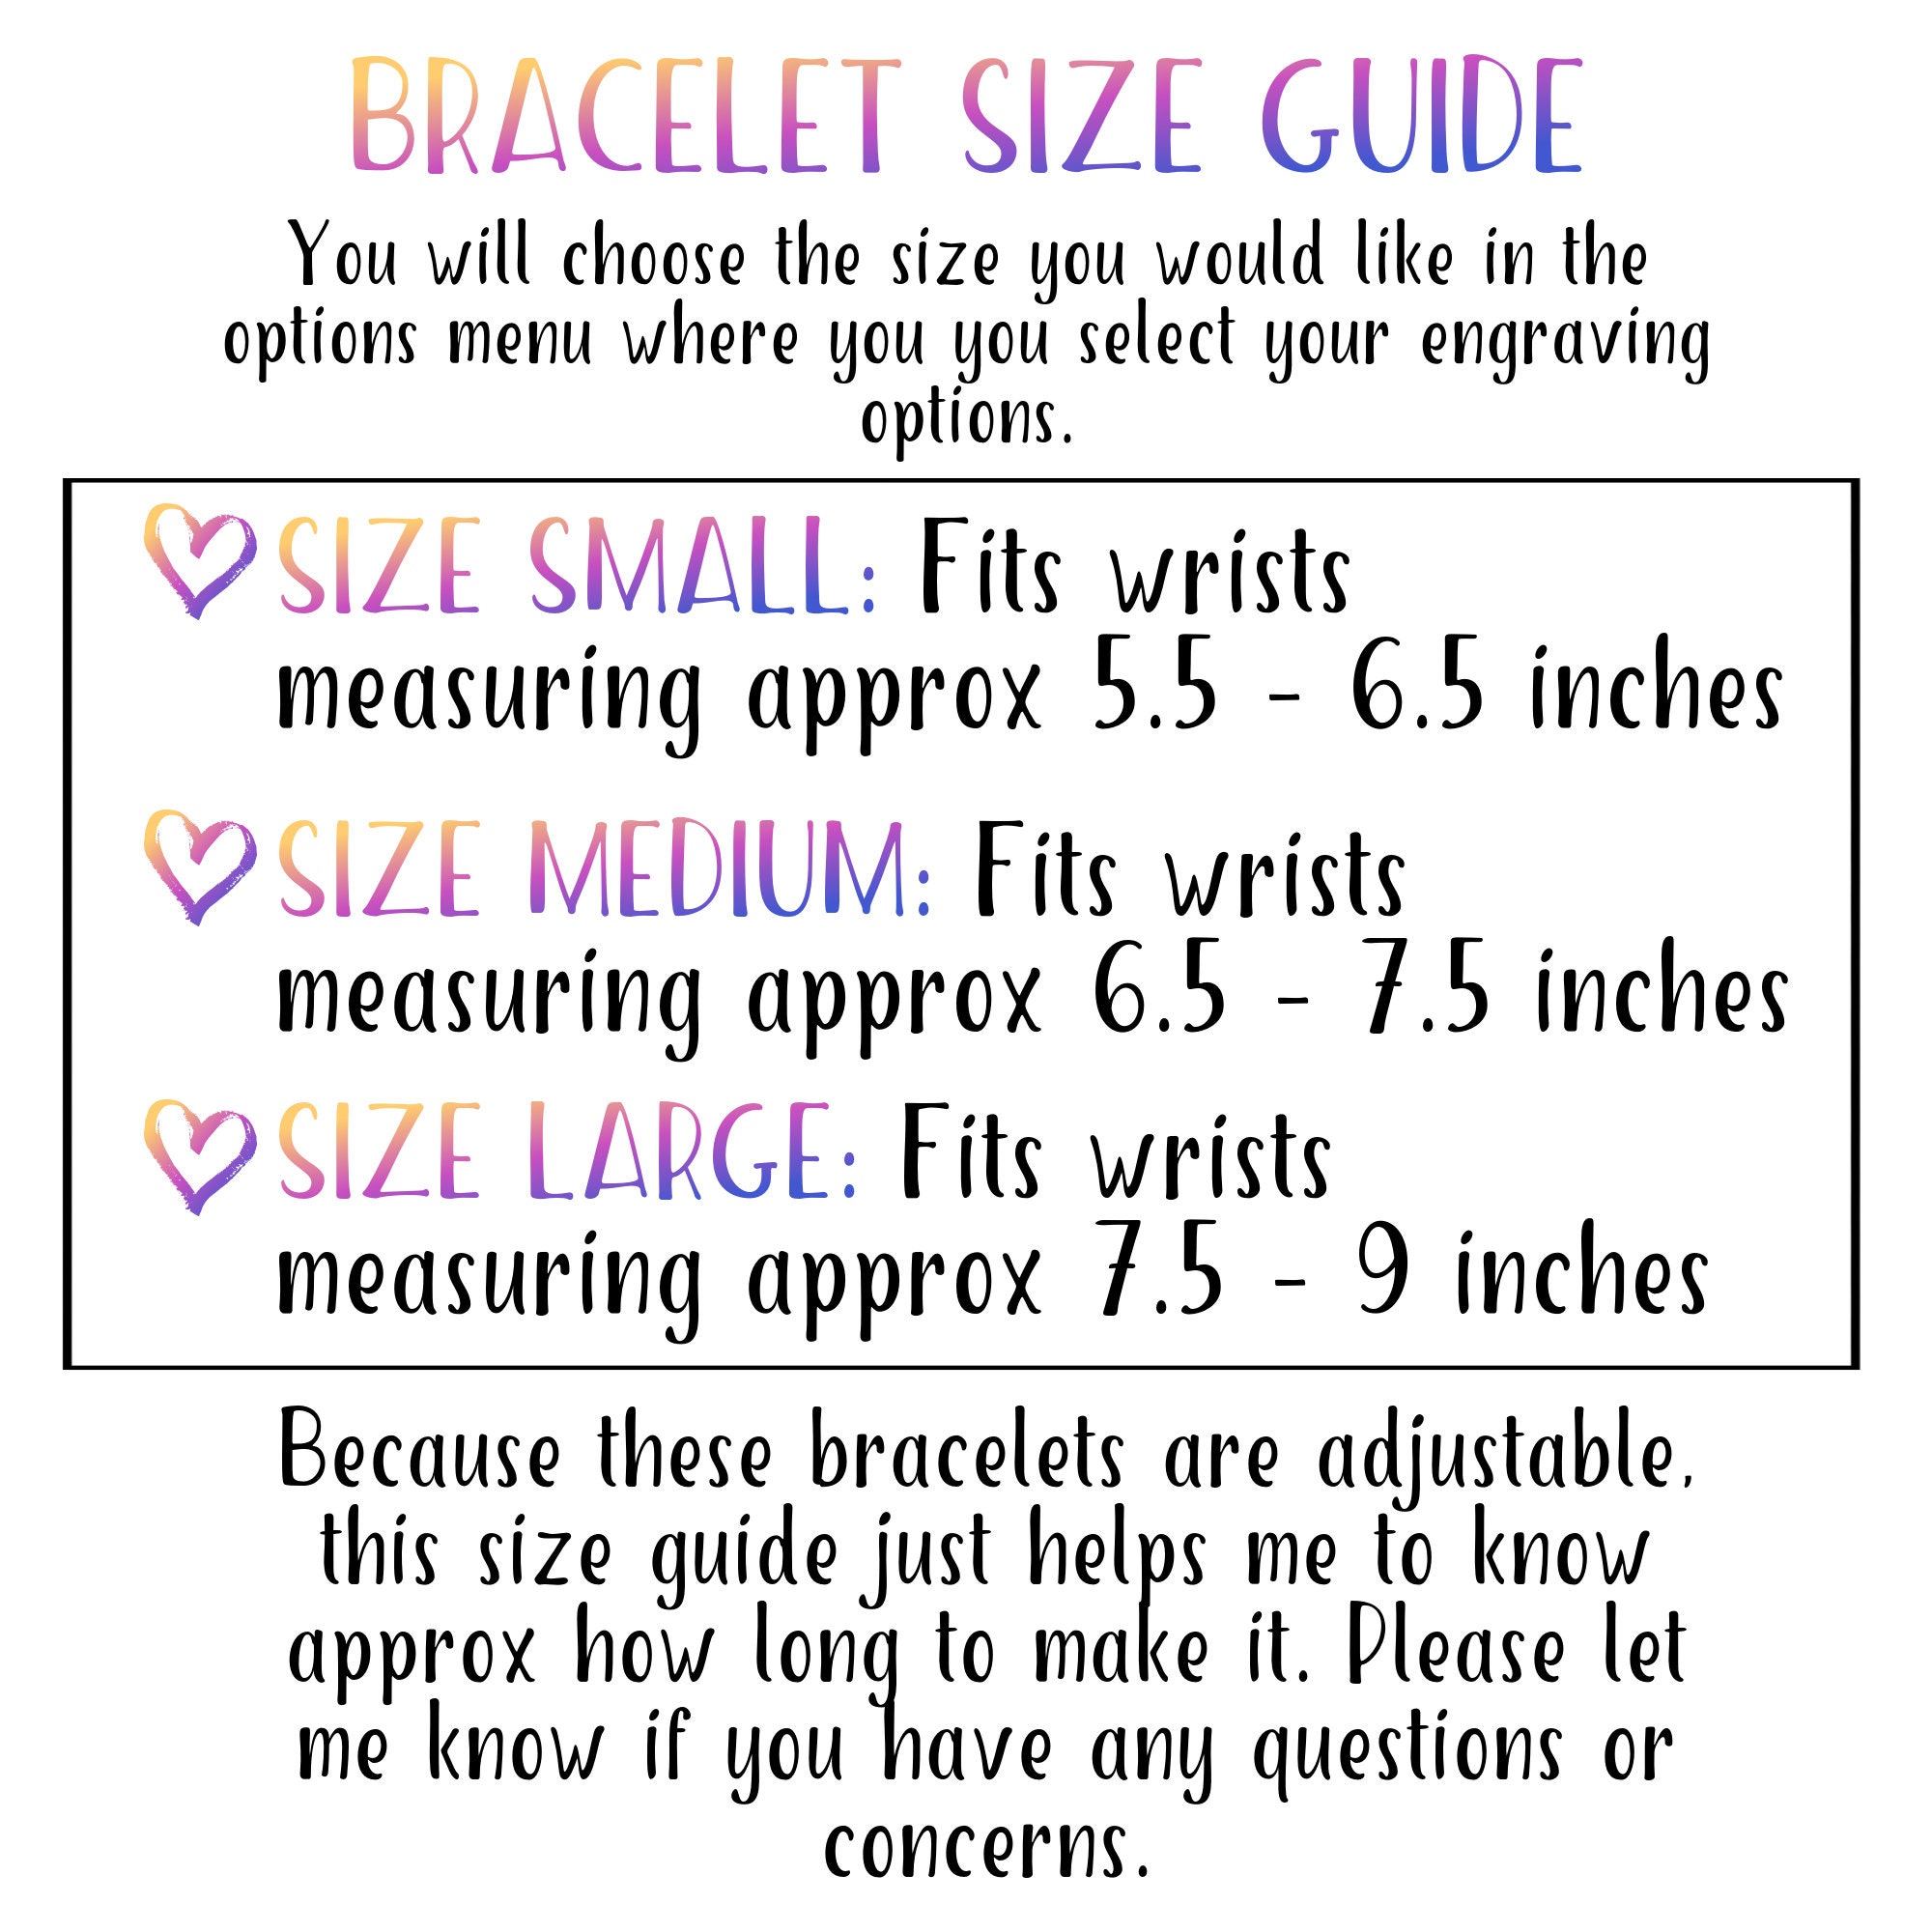 Medical Alert Bracelet, Laser Engraved Bracelet, Medical ID Bracelet, Awareness Bracelet, Adjustable Bracelet, Blood Thinner